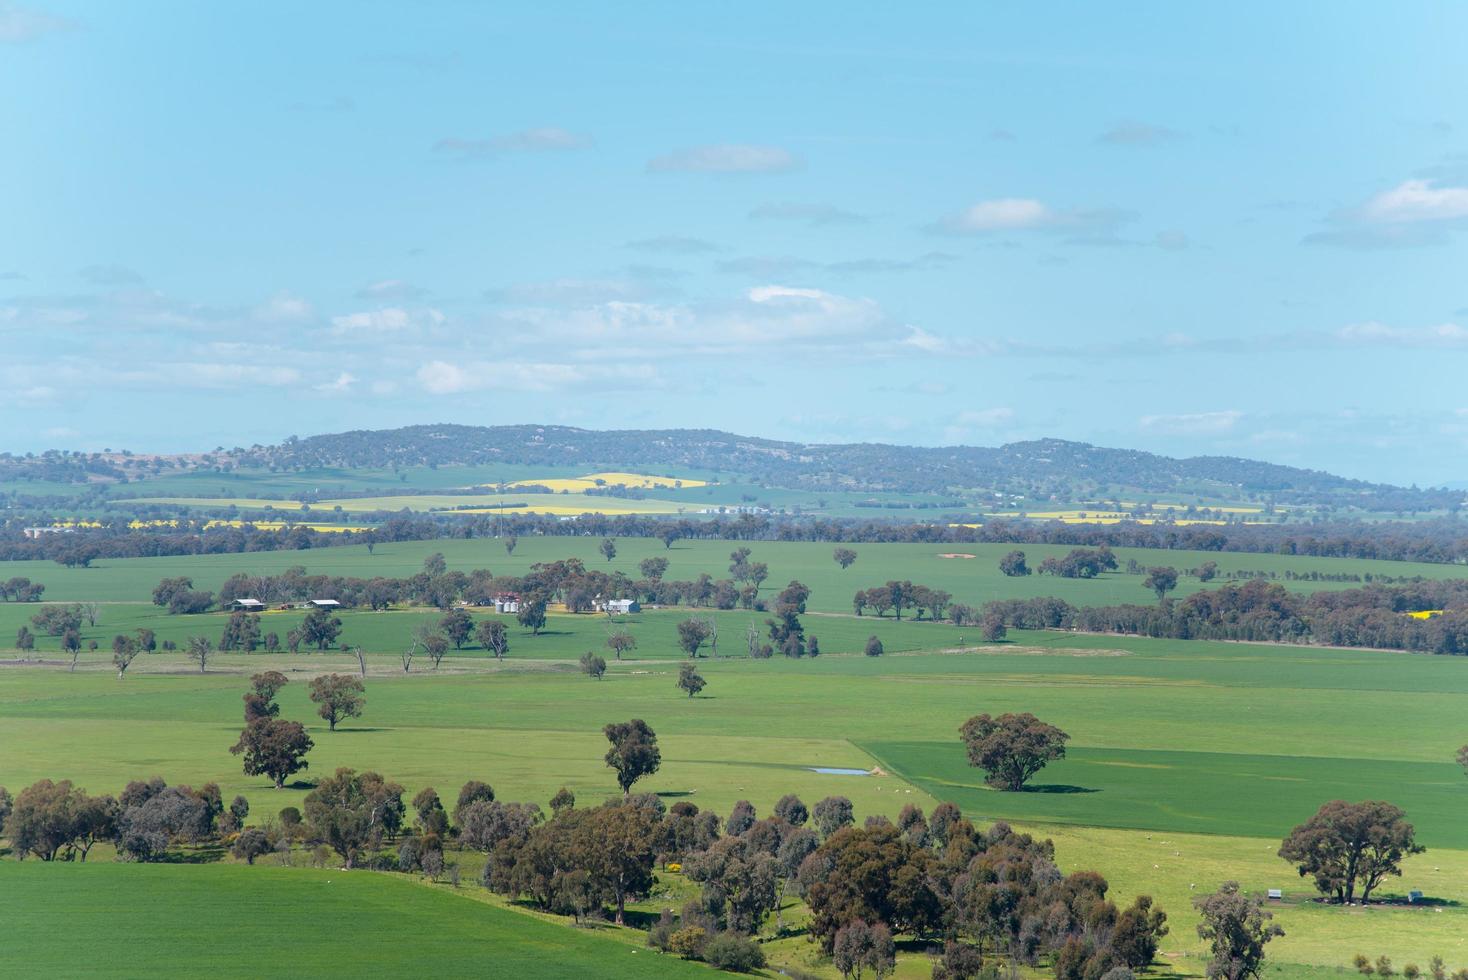 Point de vue des zones rurales dans l'Australie régionale de la ville de walla walla photo